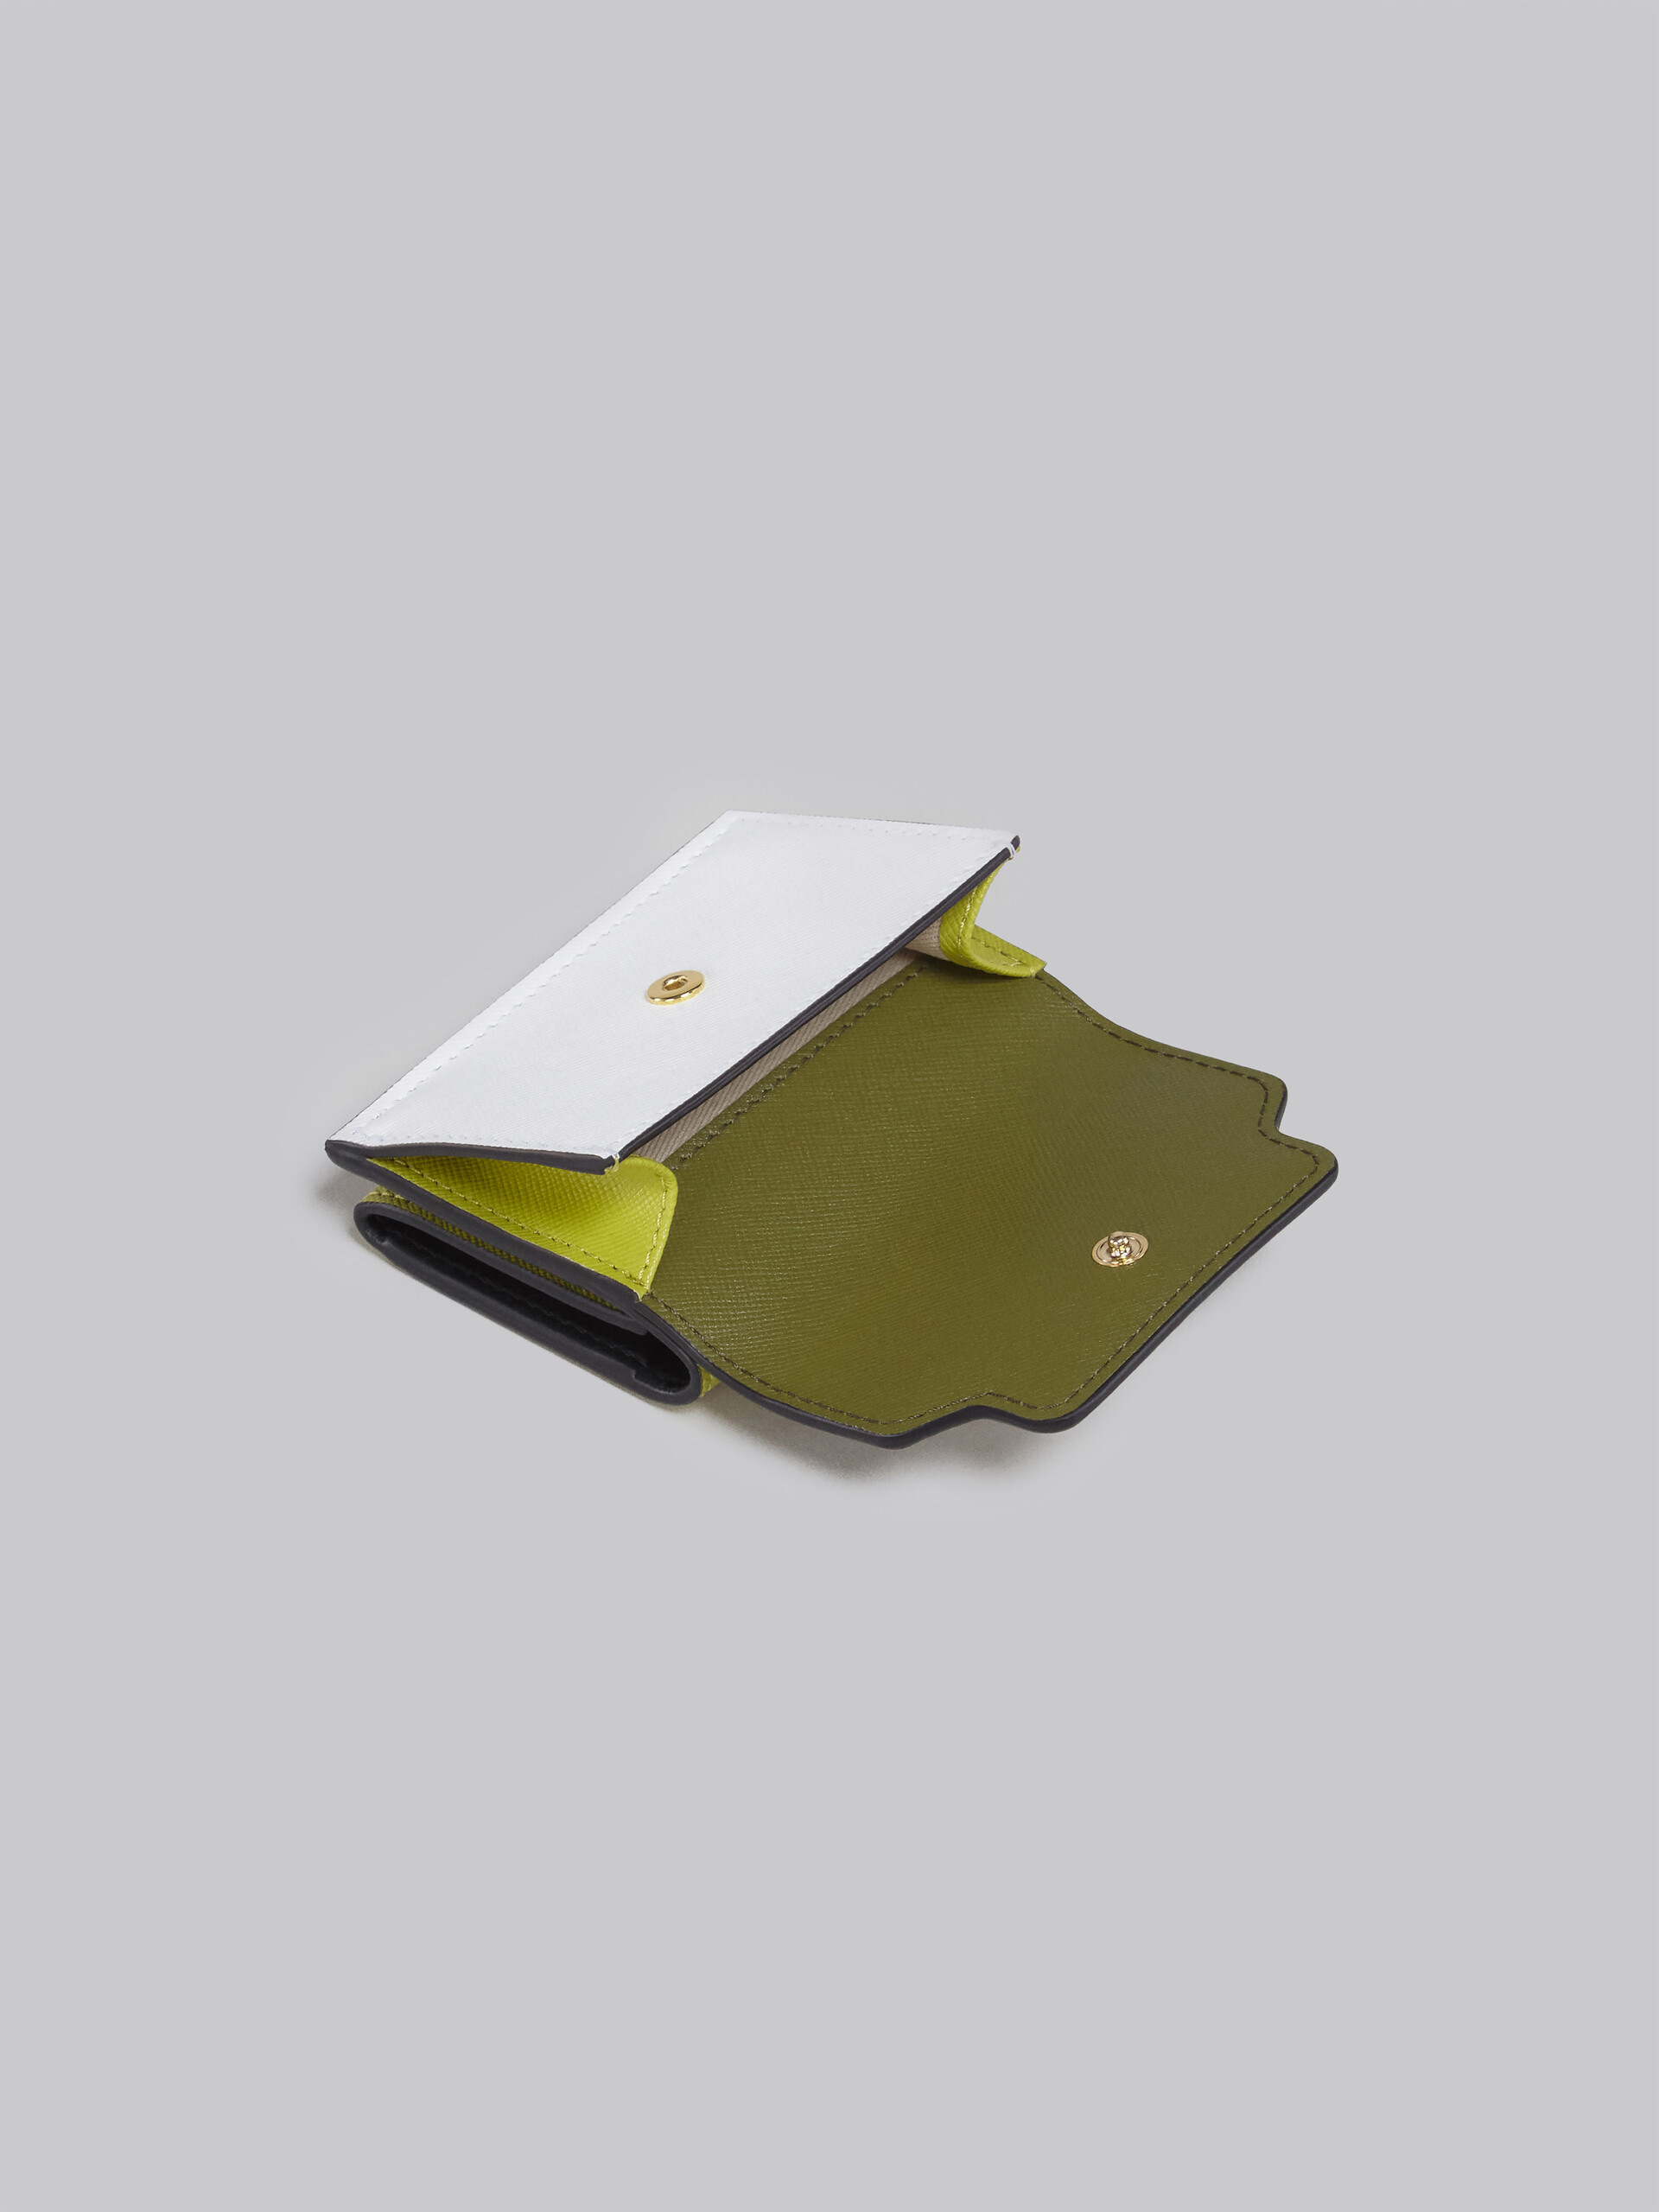 Portafoglio tri-fold in saffiano verde e bianco - Portafogli - Image 5